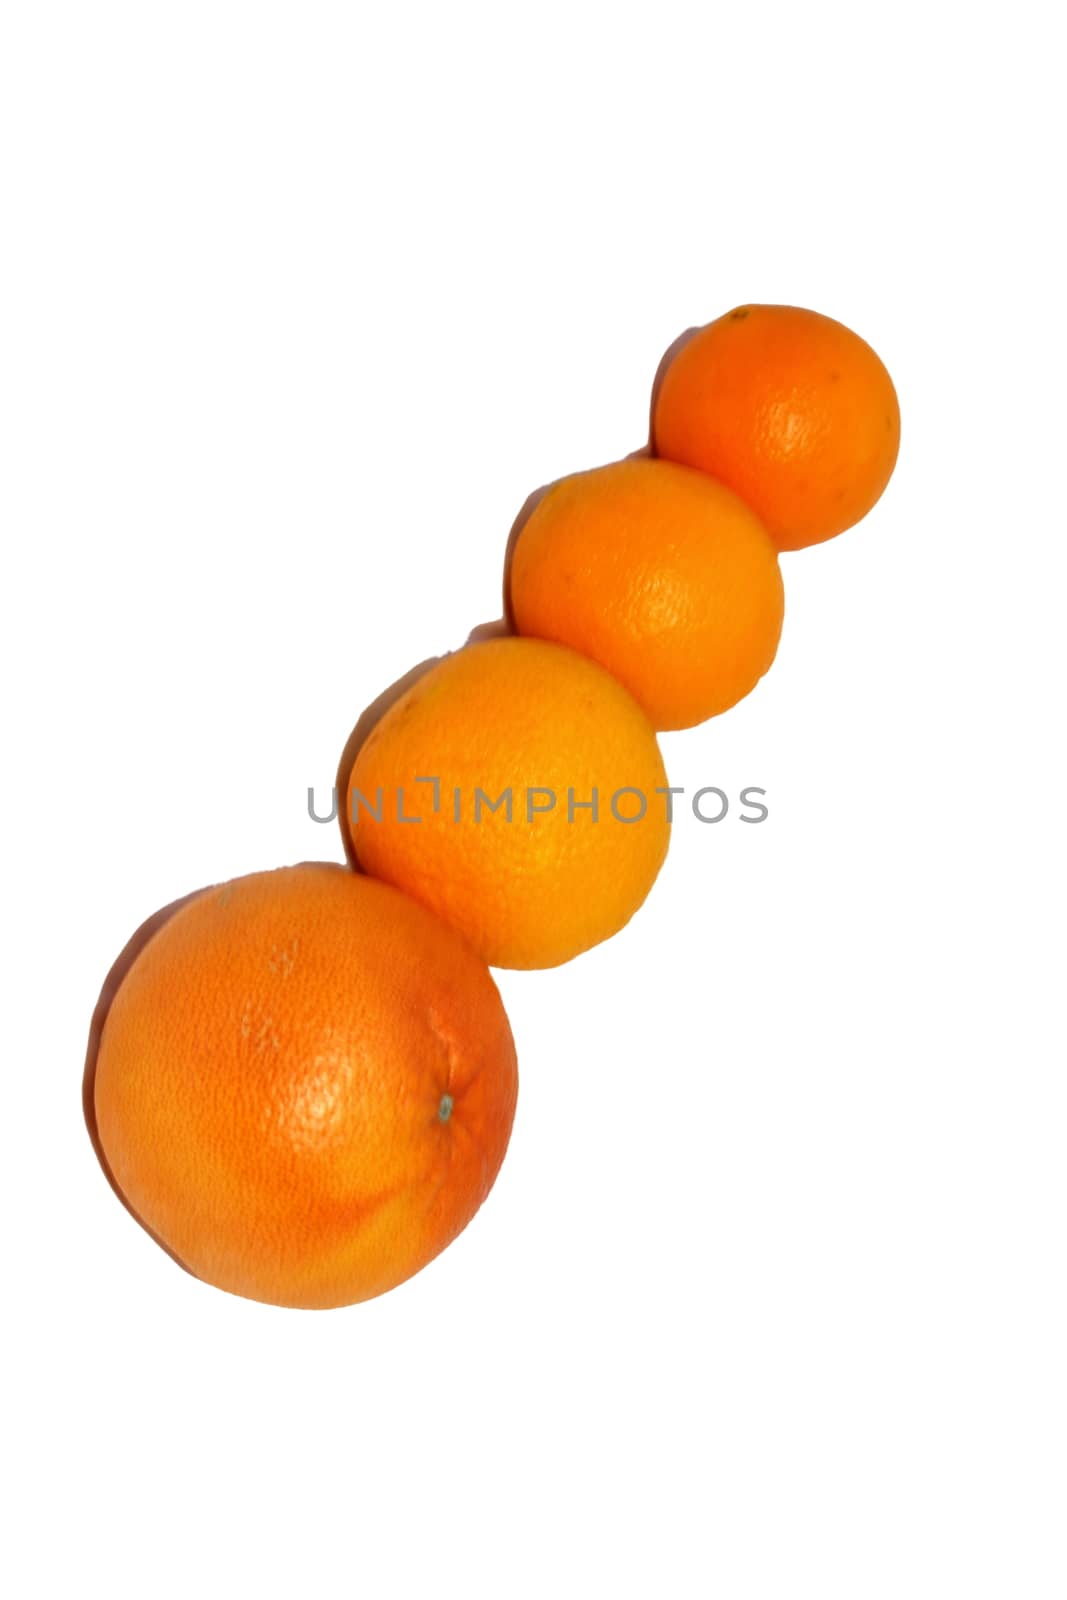 On a white background are three large orange and orange grapefruit